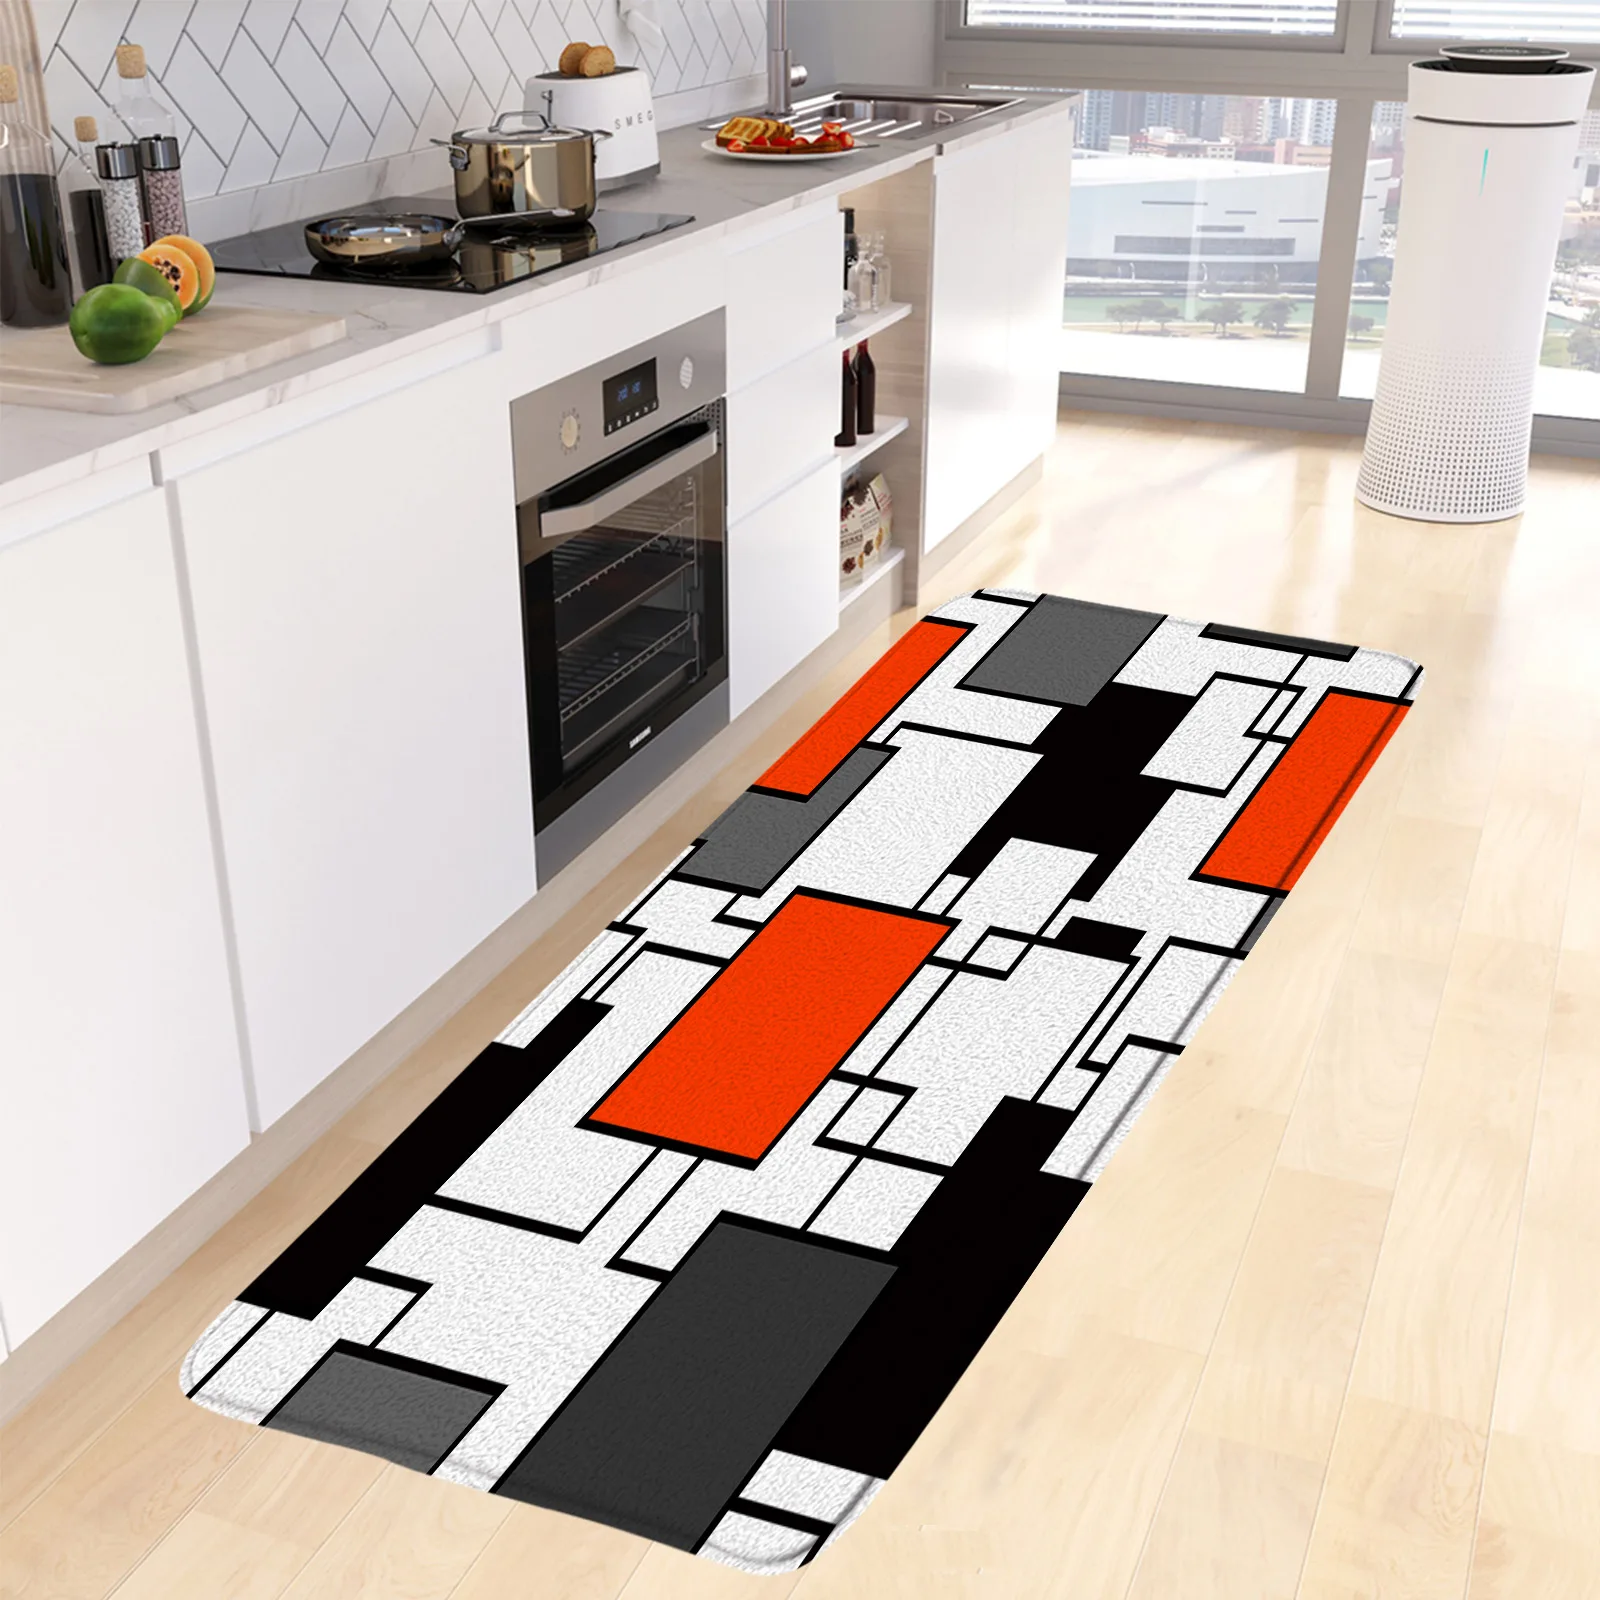 Piso de decoração xadrez vermelho para cozinha - TenStickers